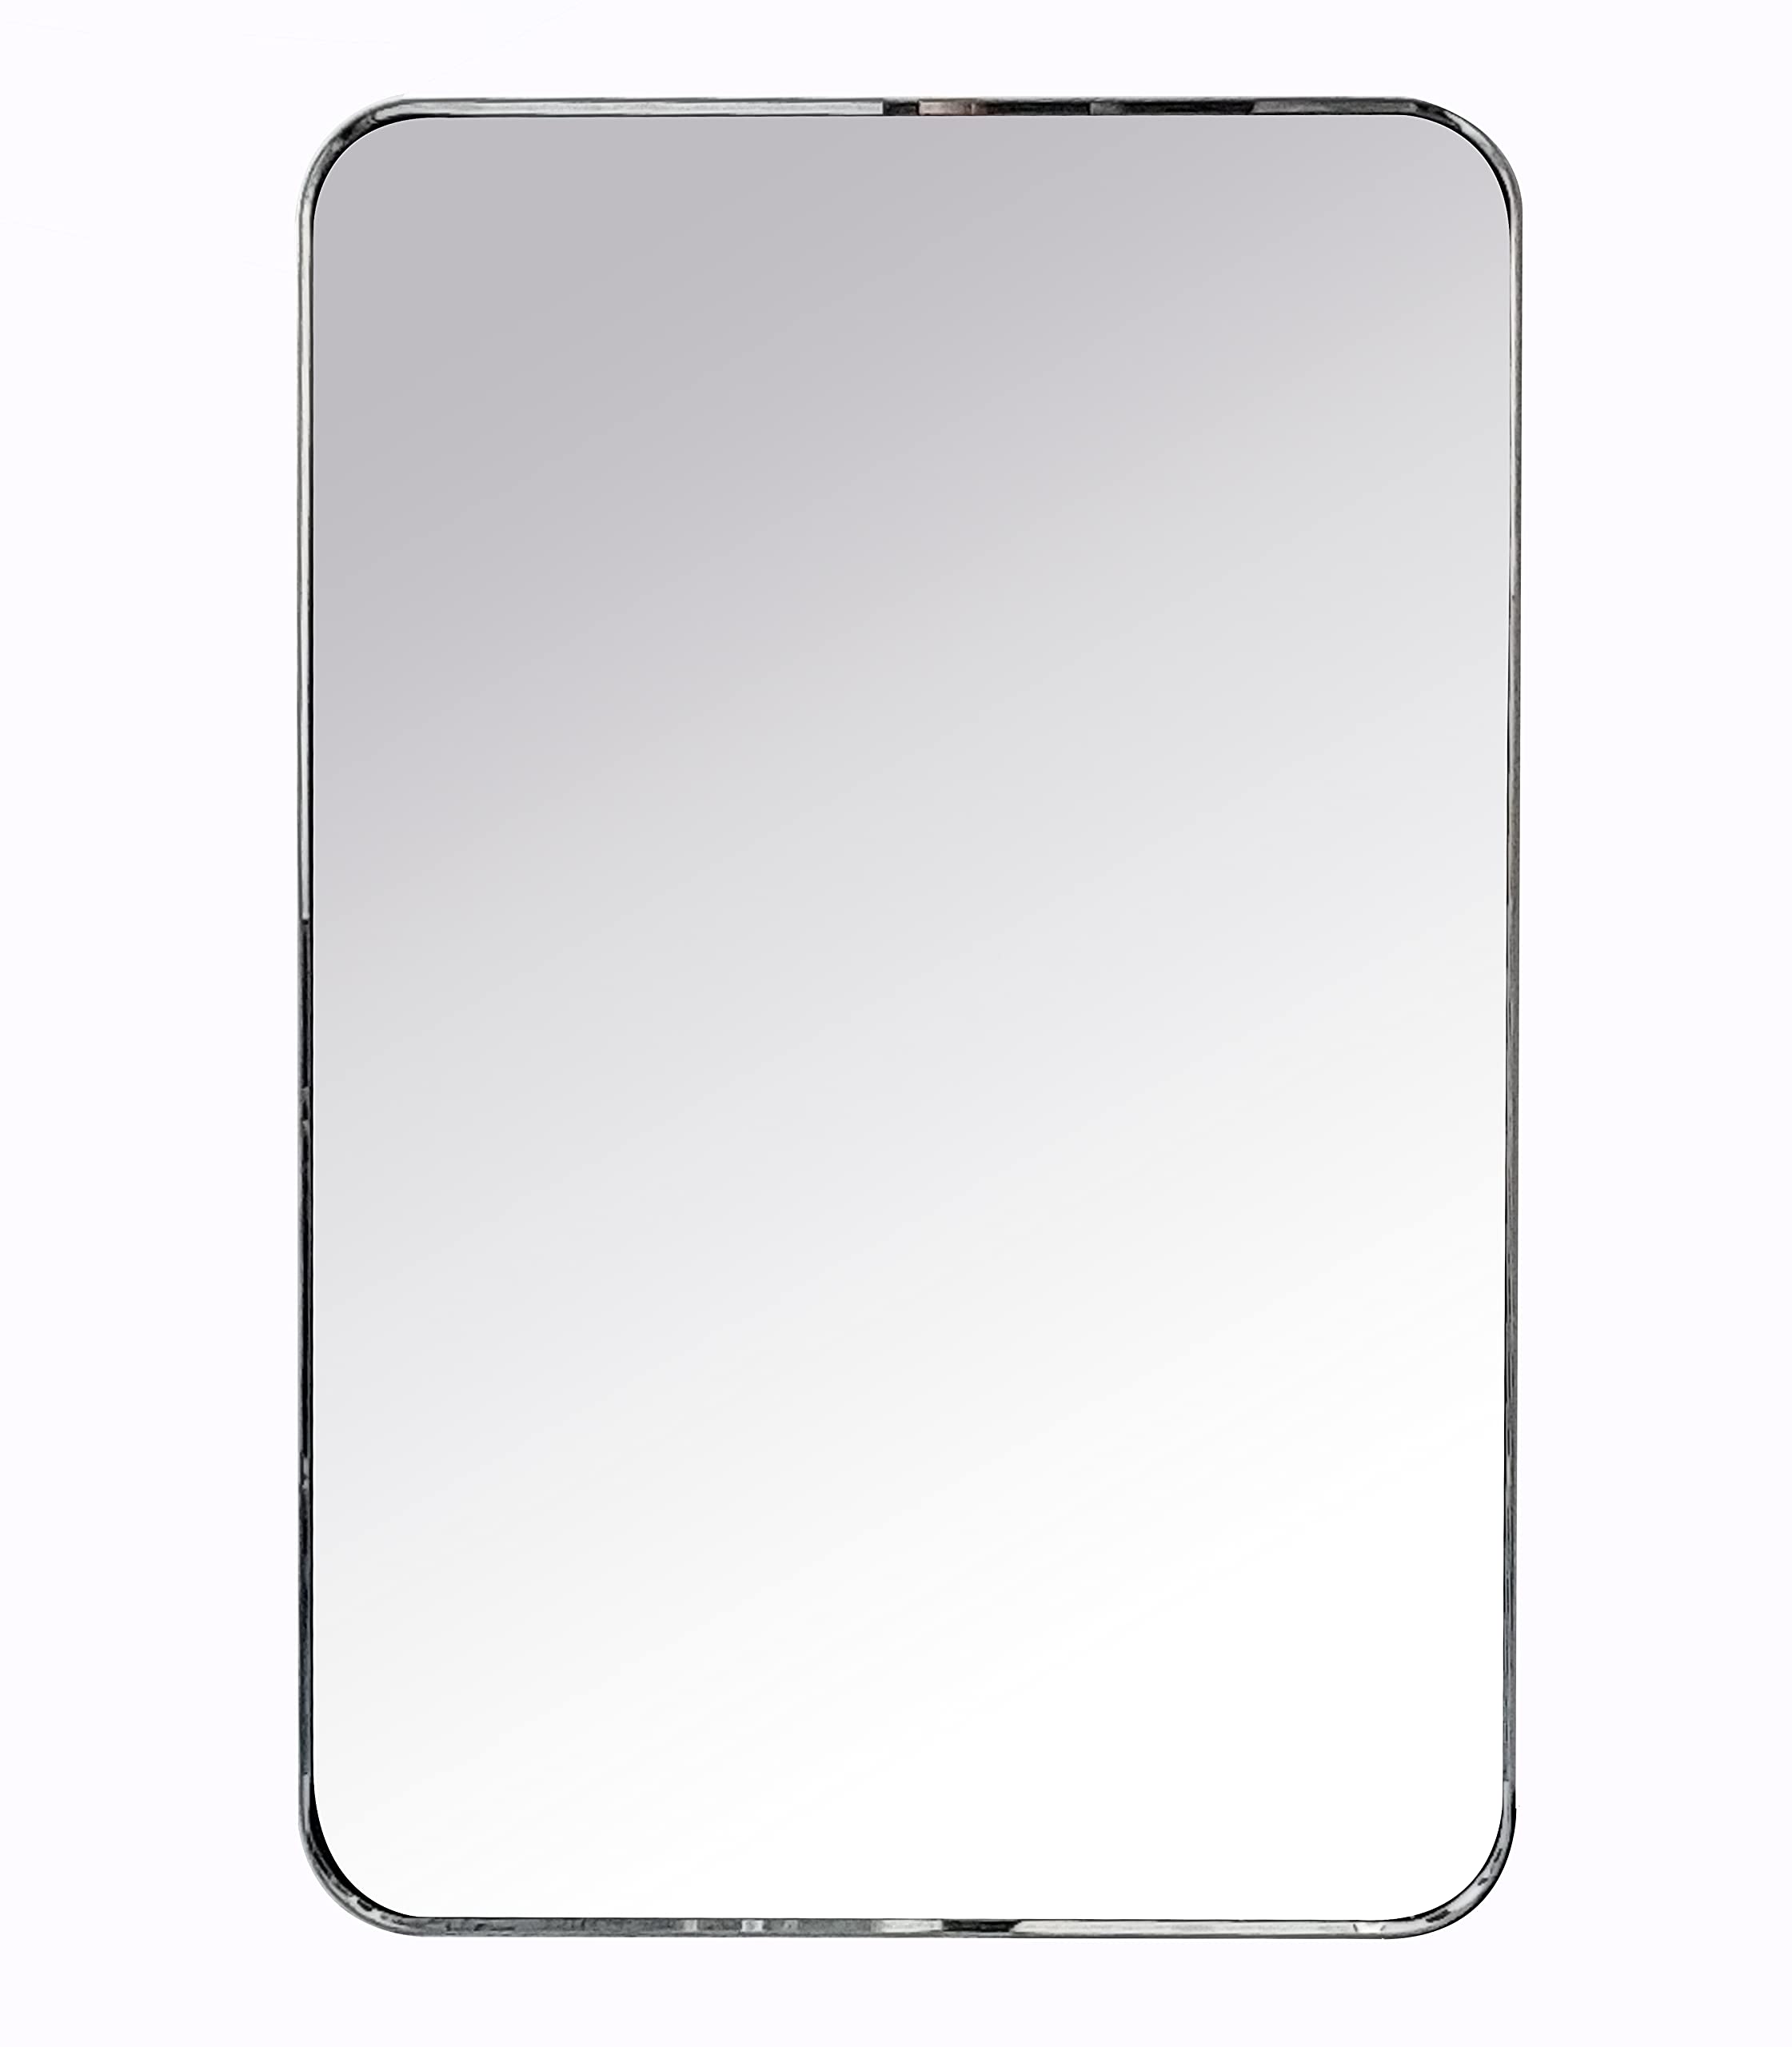 Arthers Stainless Steel Metal Bathroom Vanity Wall Mirror-24x36-Brushed Nickel